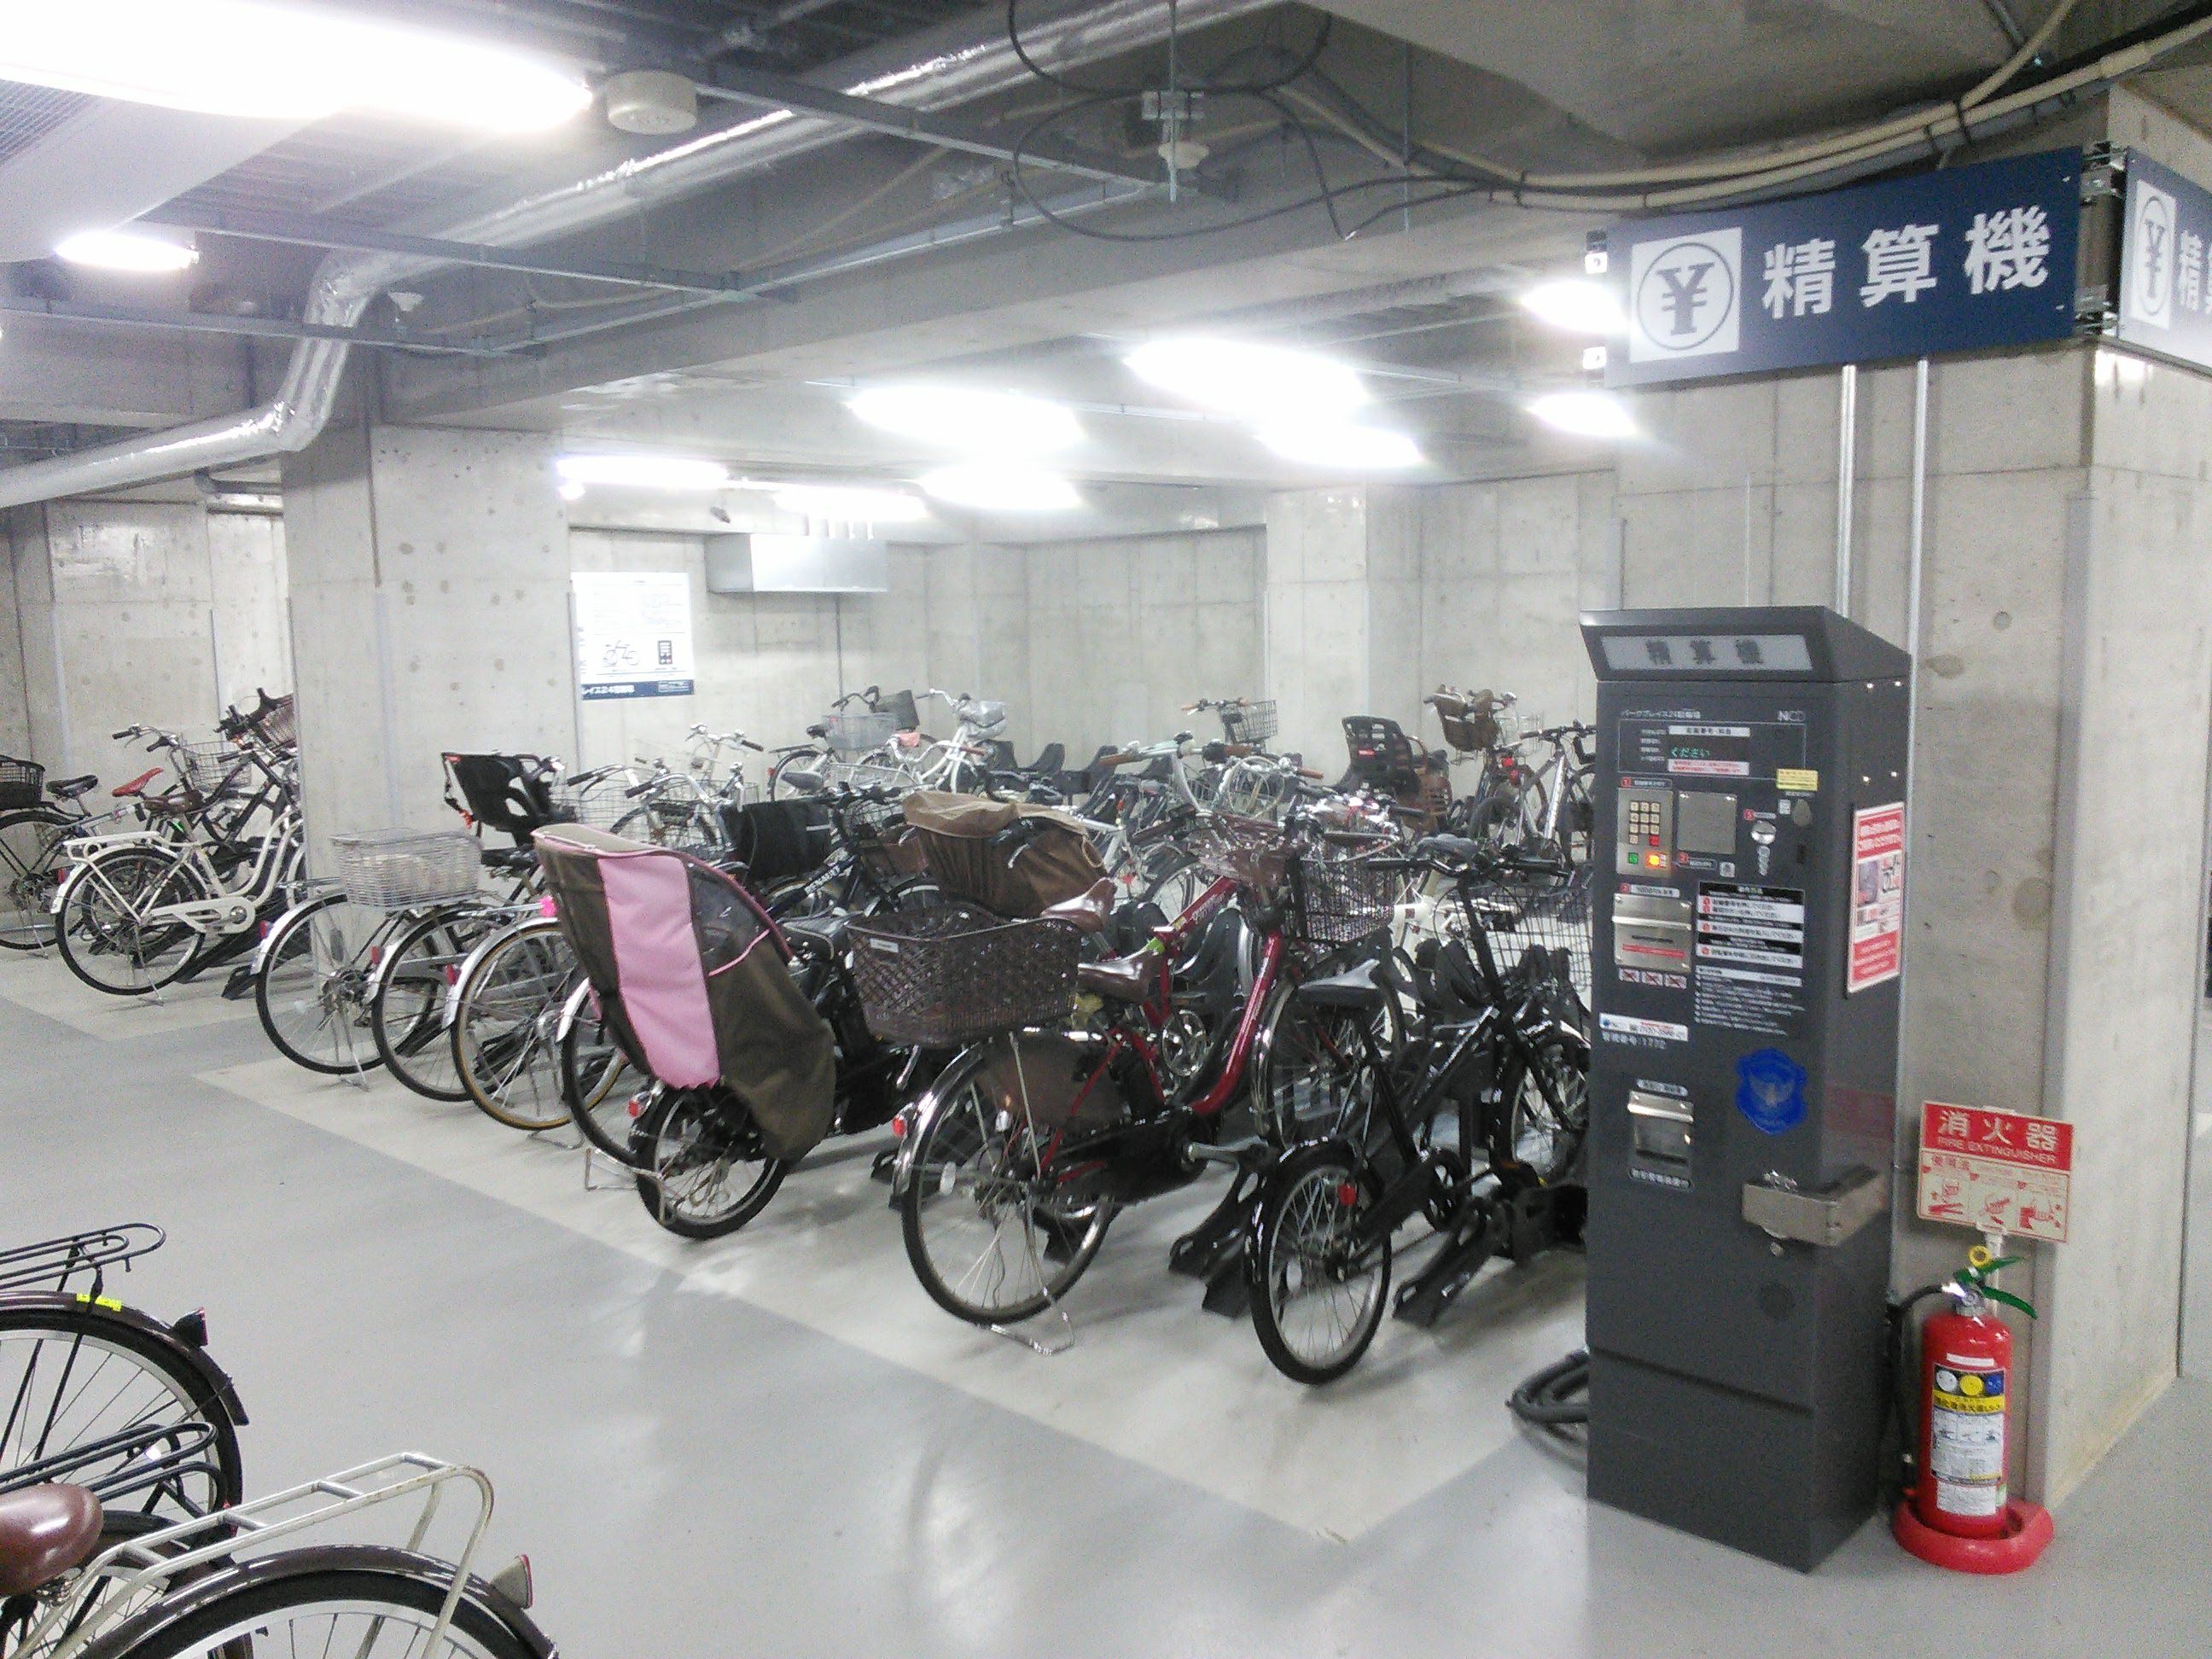 表参道 駅前 暫定 自転車 駐 車場